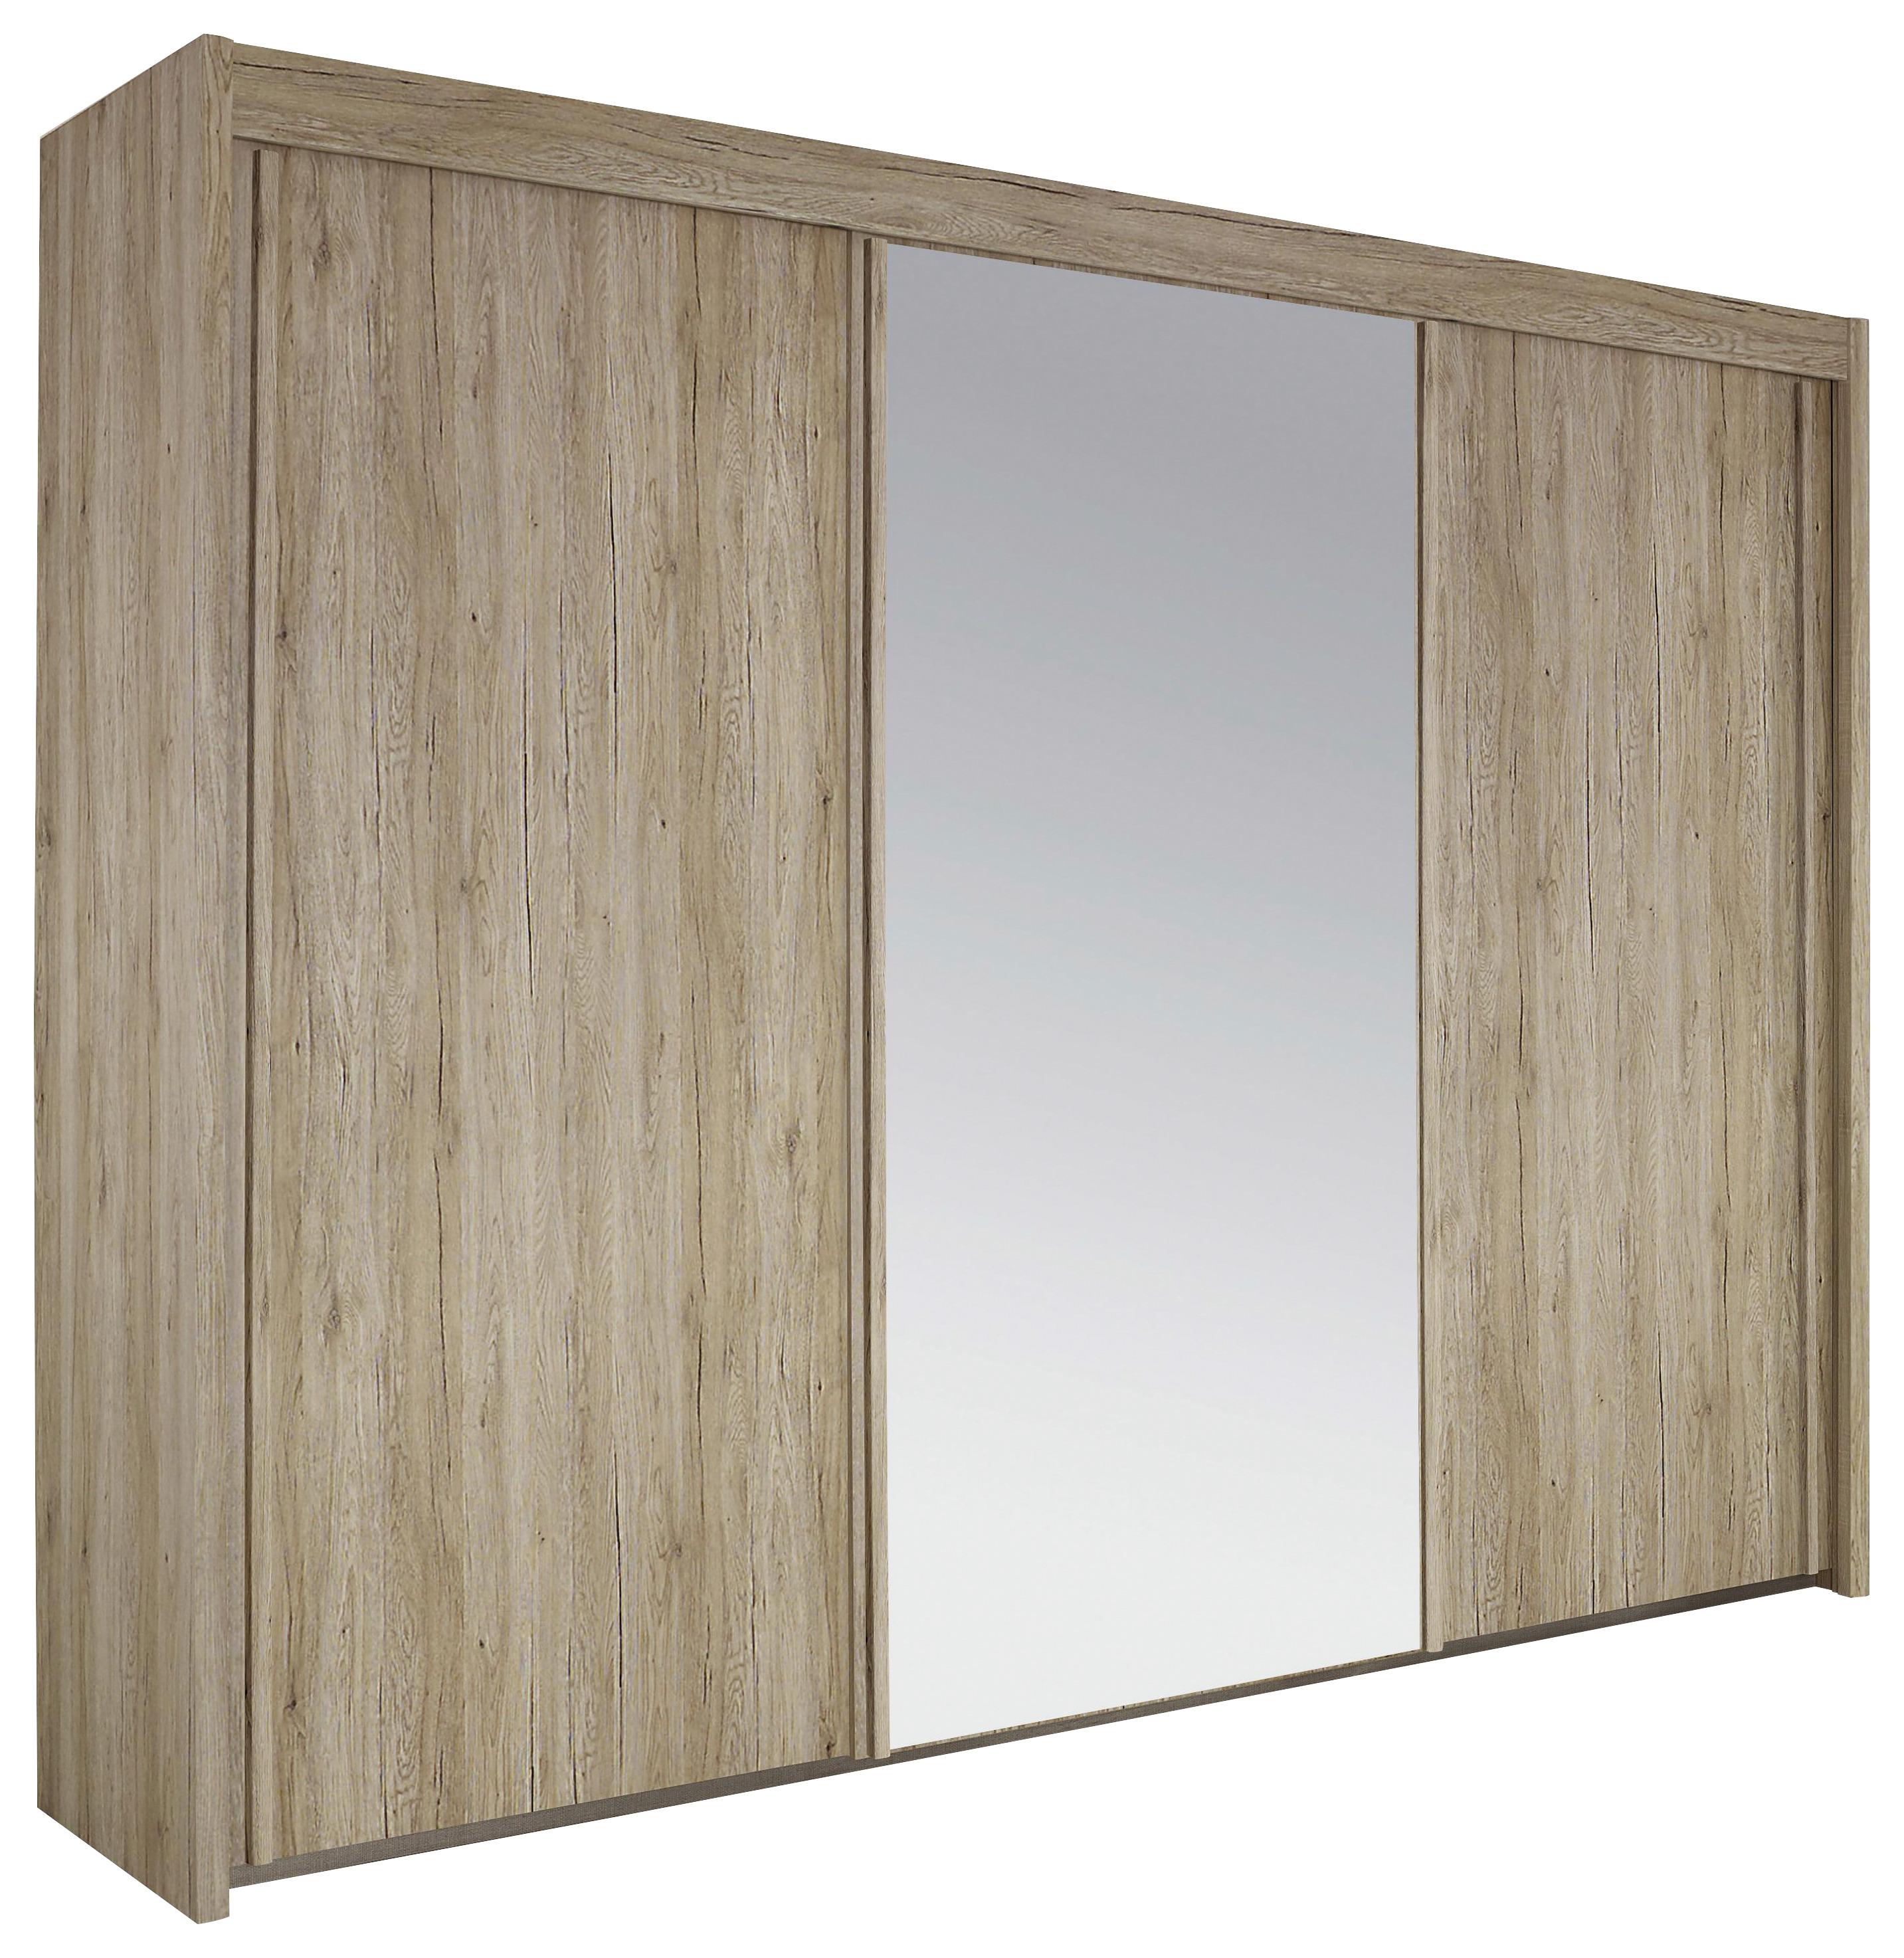 Dulap cu uși glisante Imperial - culoare lemn wenge, Konventionell, sticlă/material pe bază de lemn (280/223/65cm)